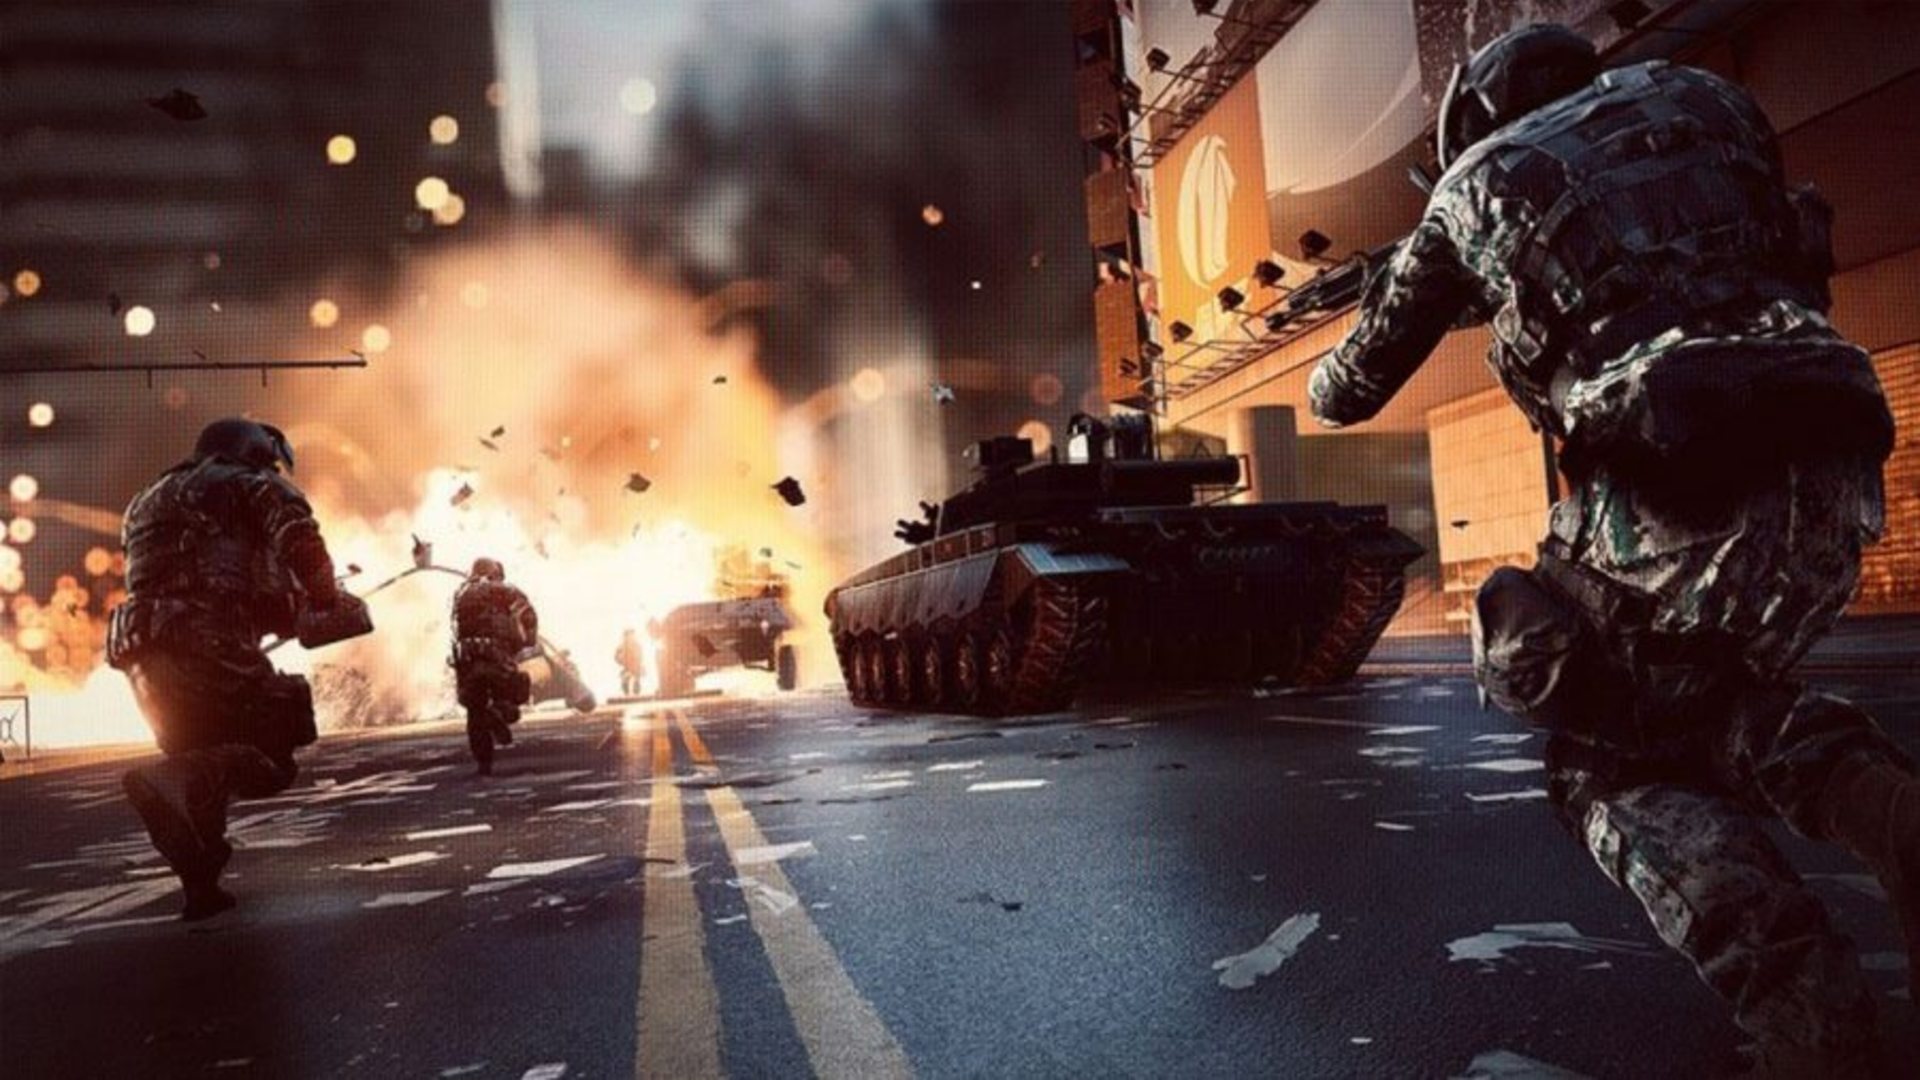 Най -добри танкови игри: Battlefield 2042. Изображението показва войници и танкове на градските улици. Също така има експлозия